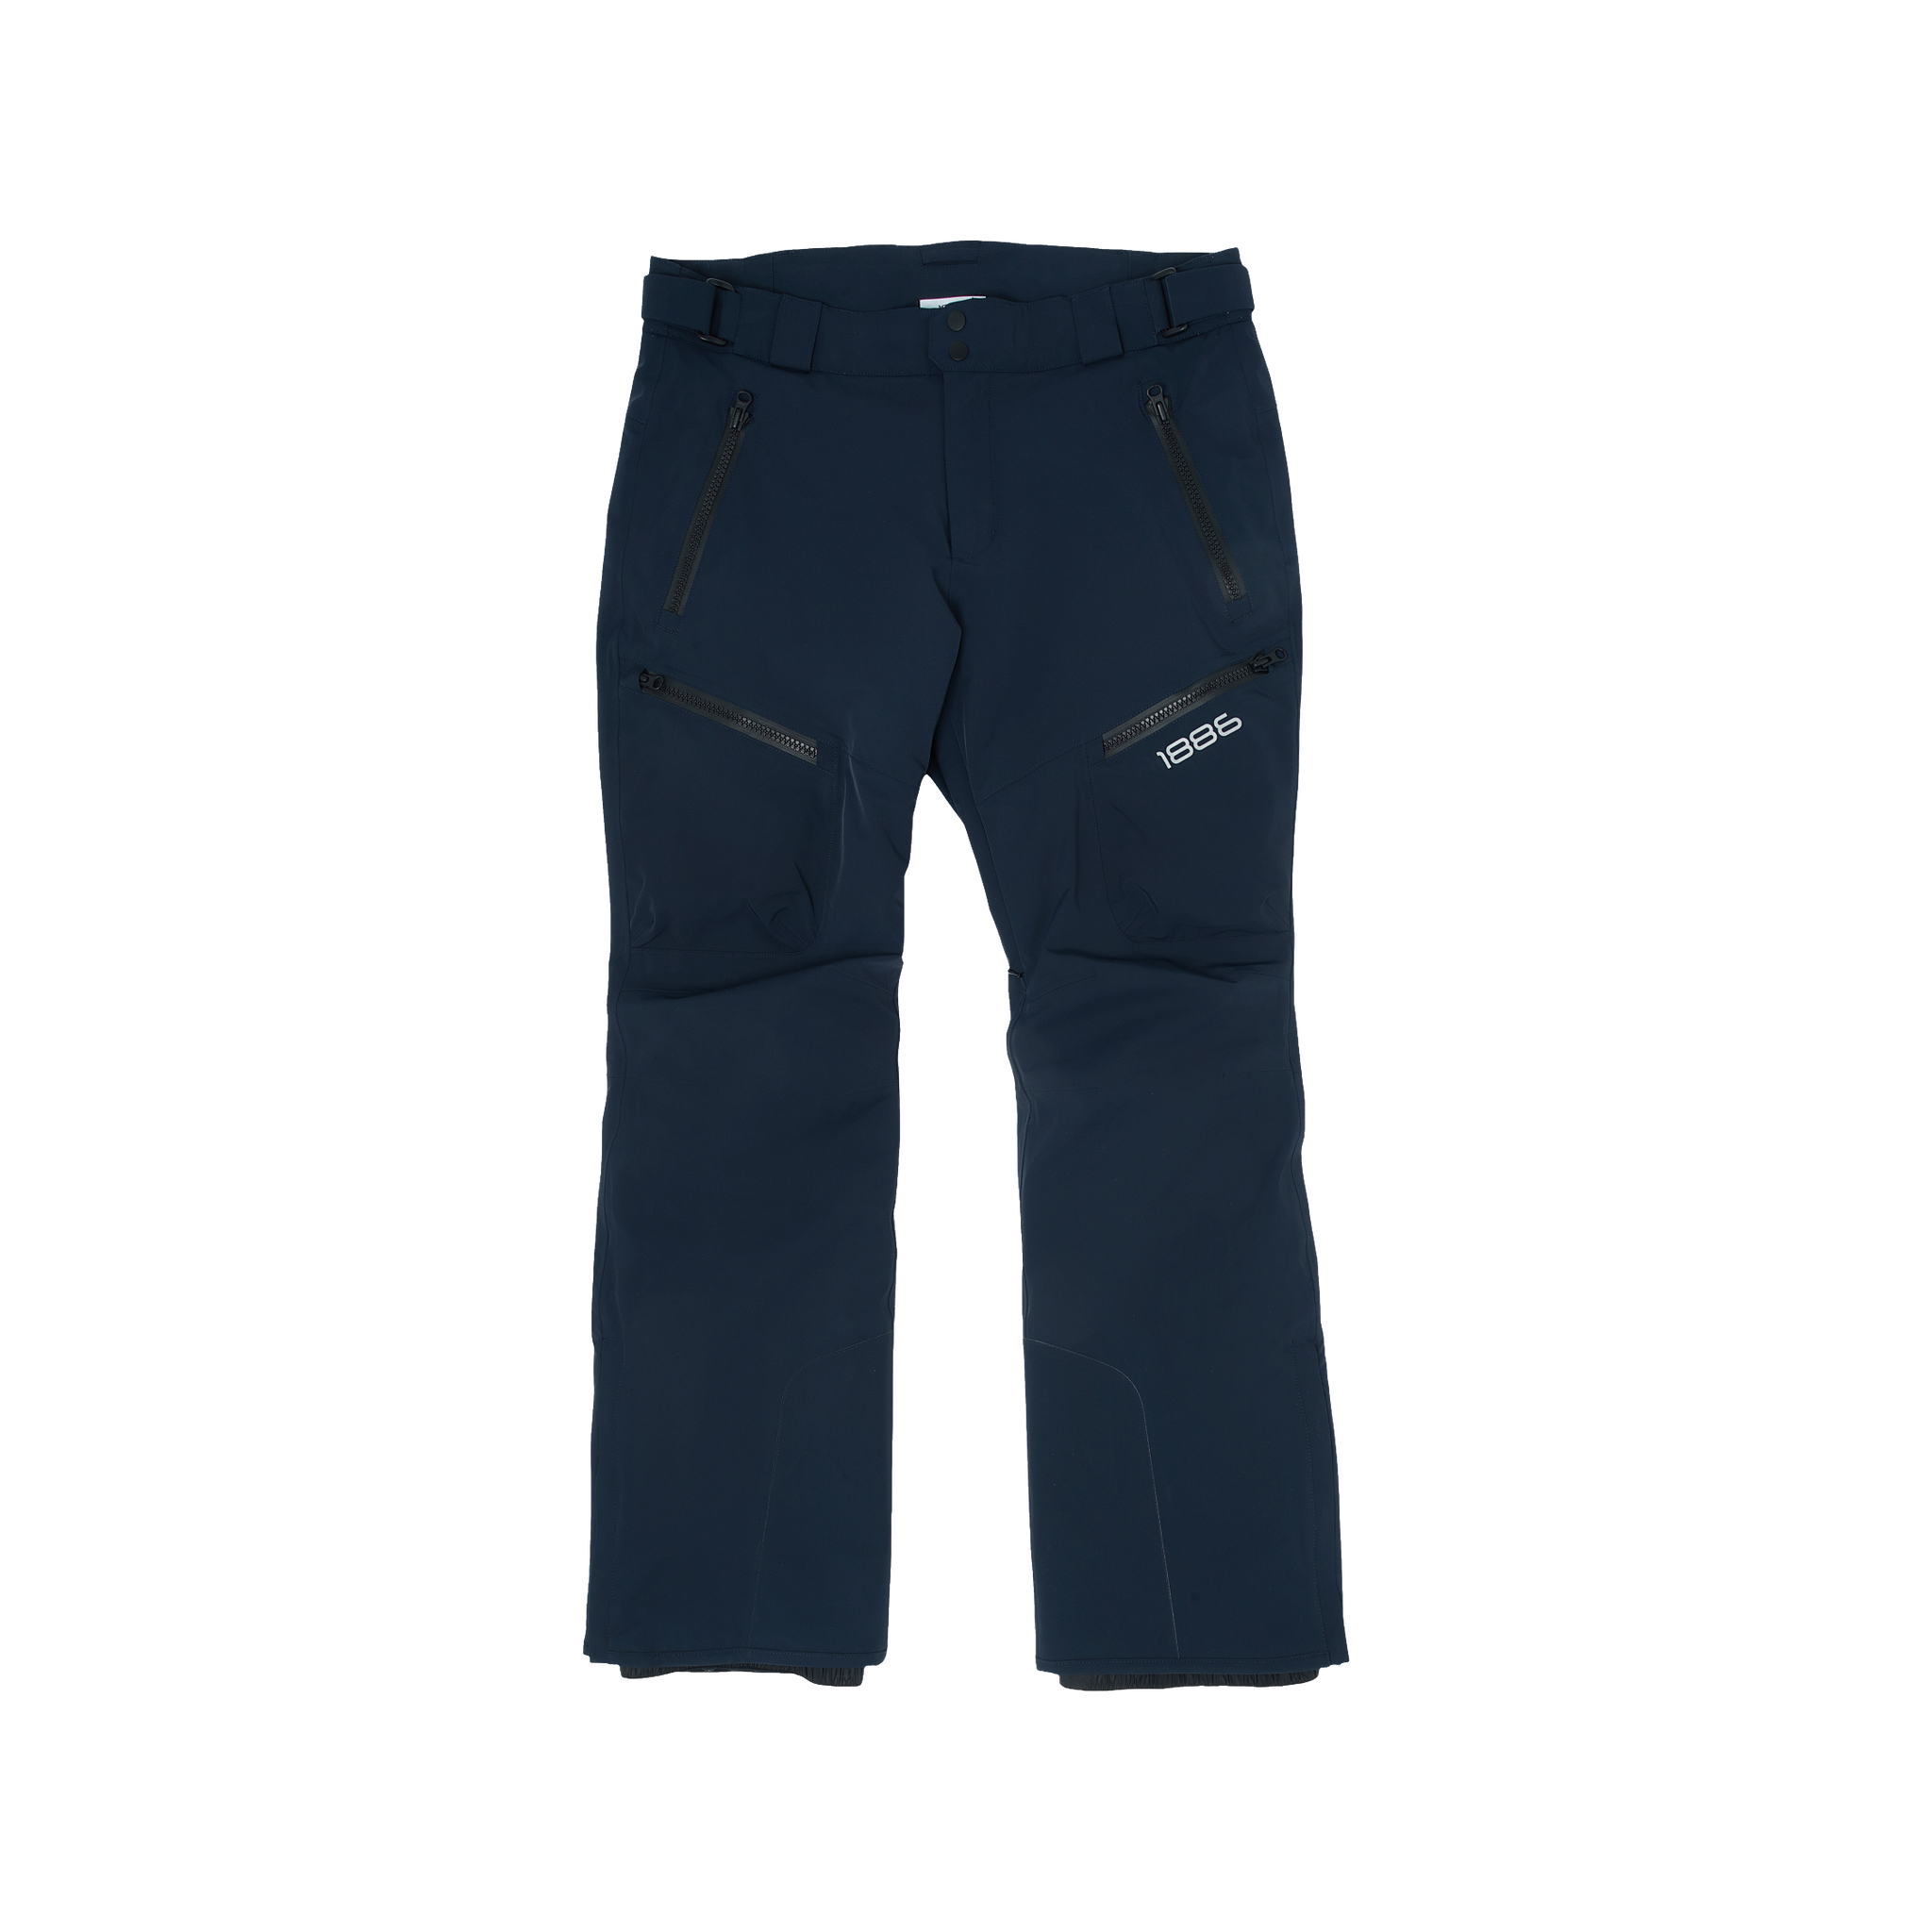 Navy Blue Ski Trouser - Navy Blue